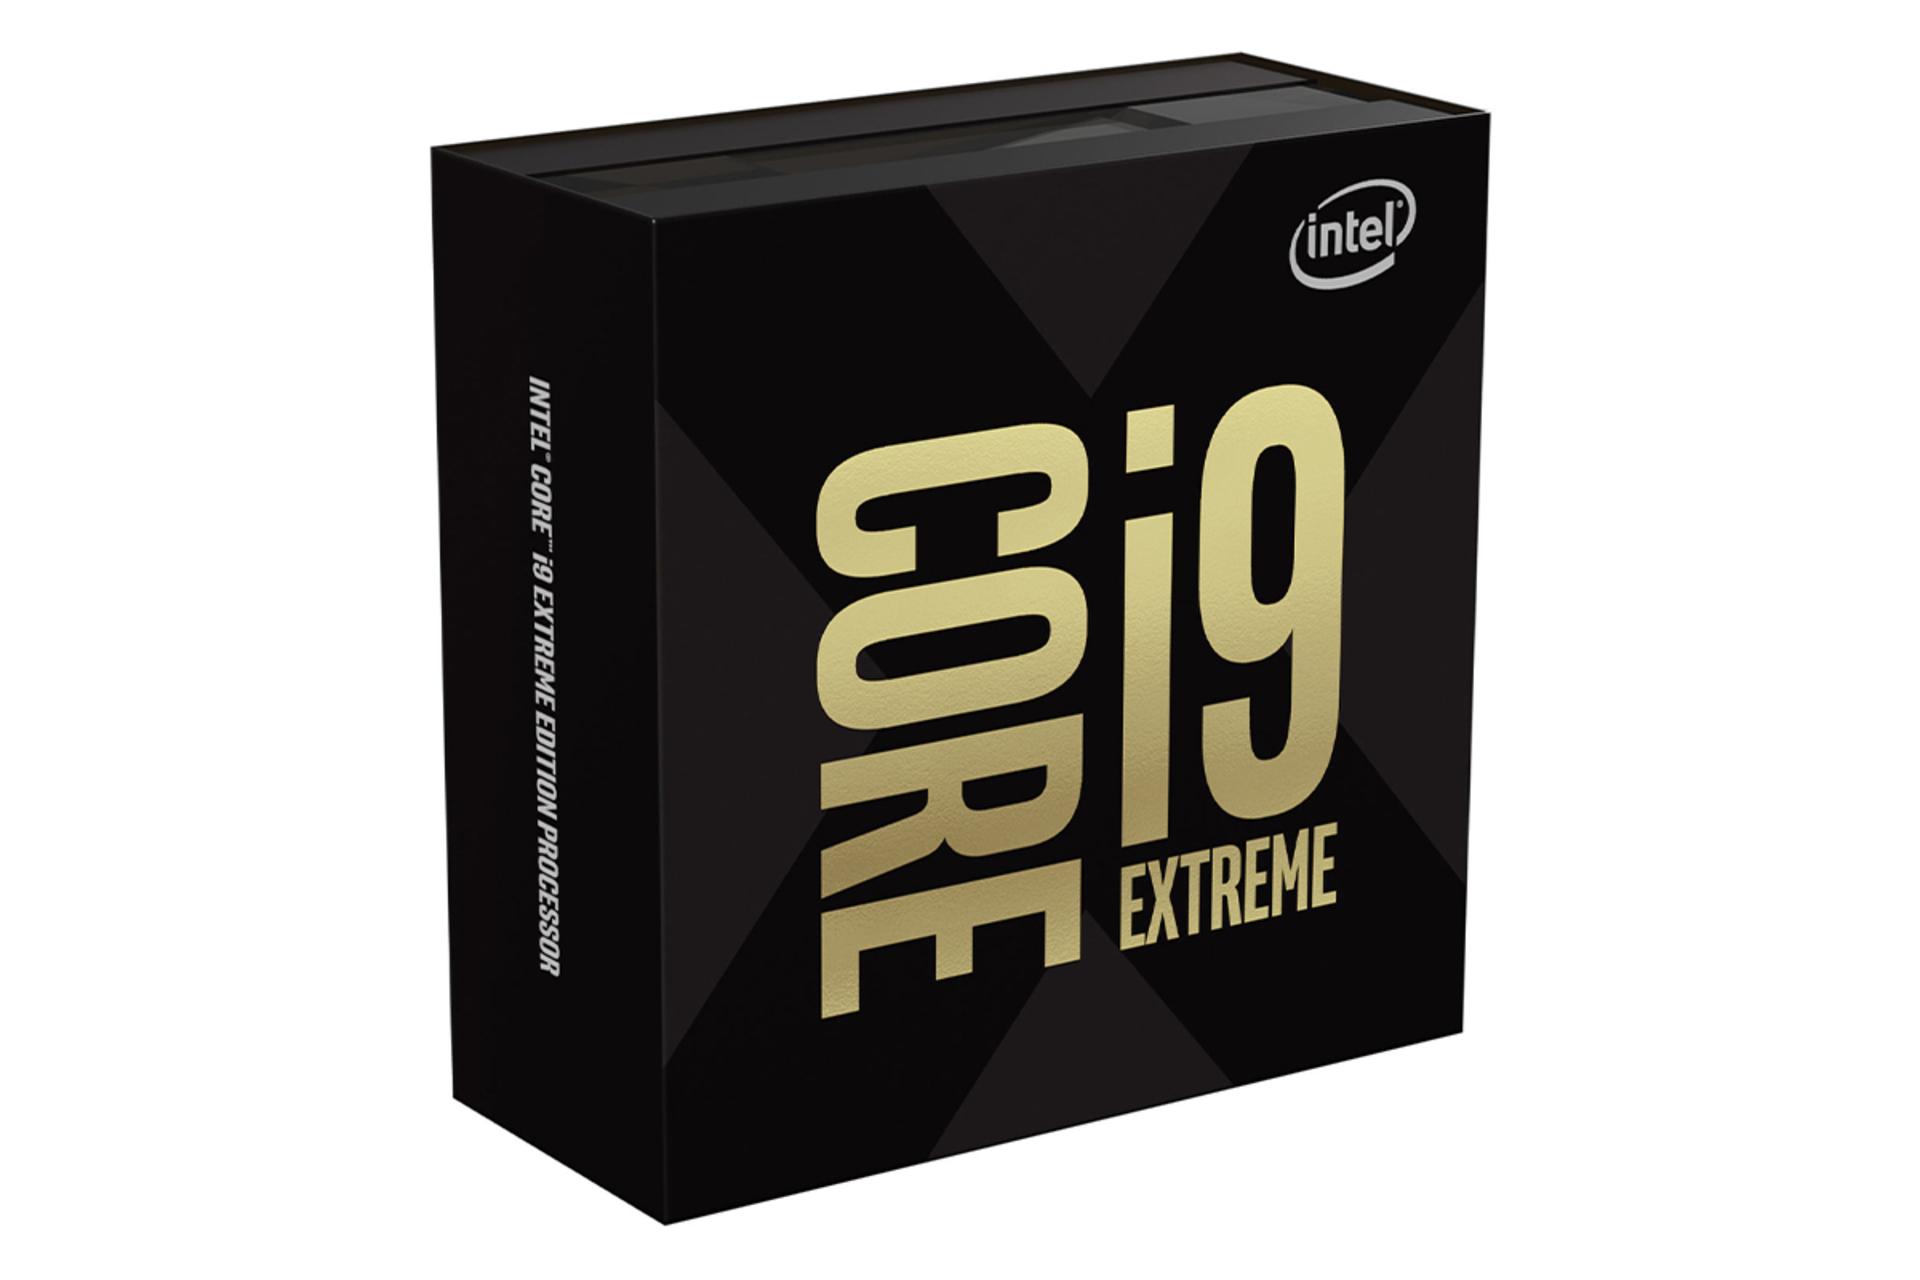 مرجع متخصصين ايران اينتل Core i9-9980XE اكستريم اديشن / Intel Core i9-9980XE Extreme Edition